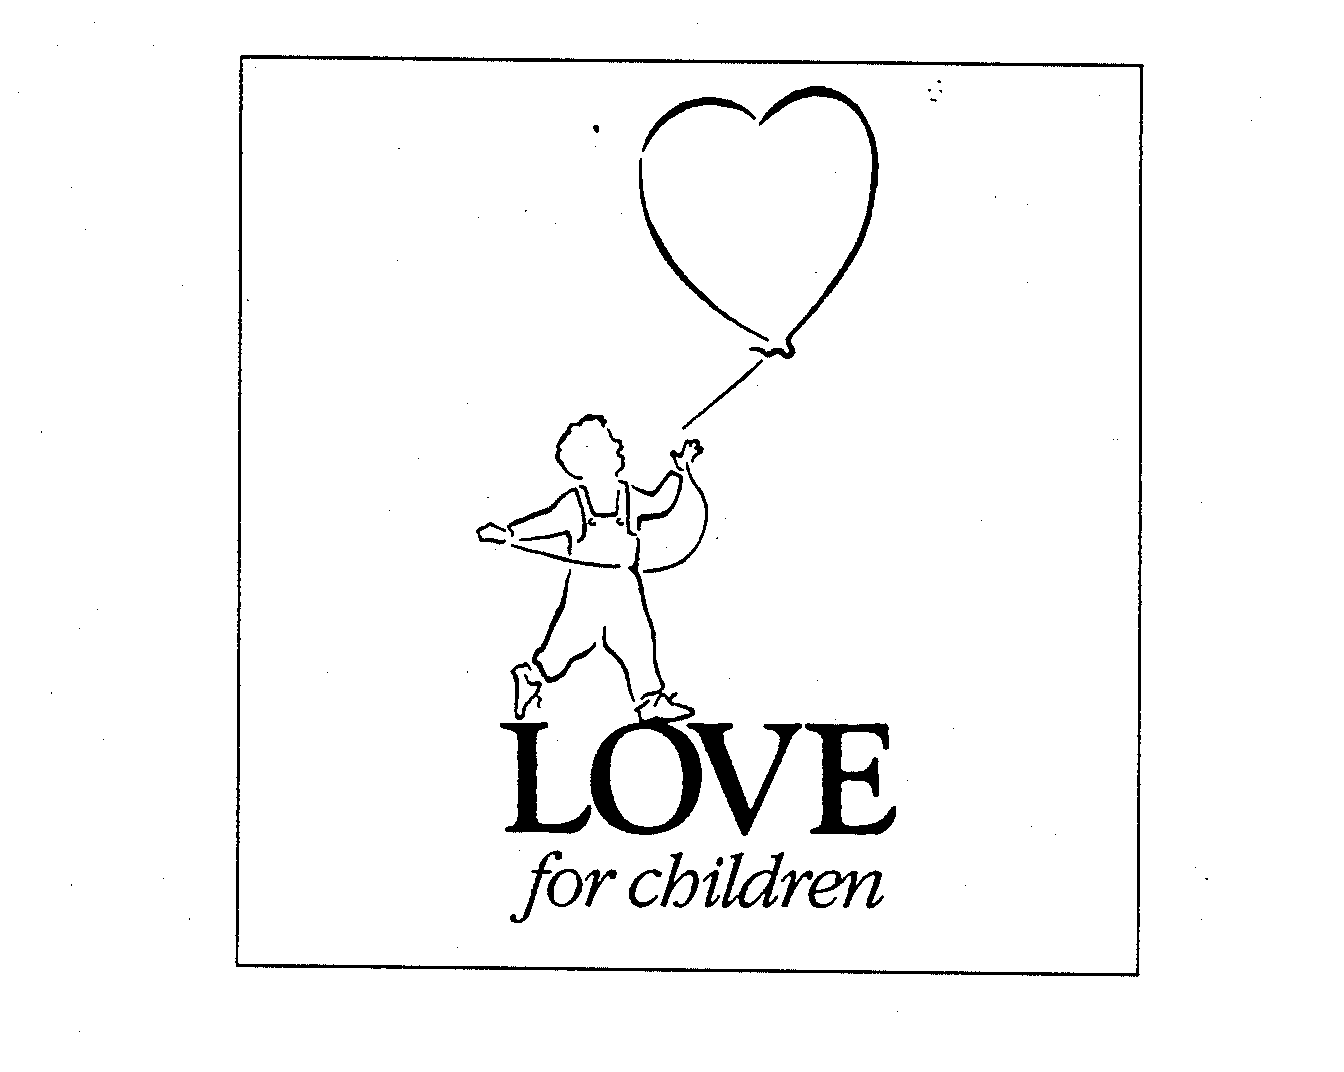  LOVE FOR CHILDREN